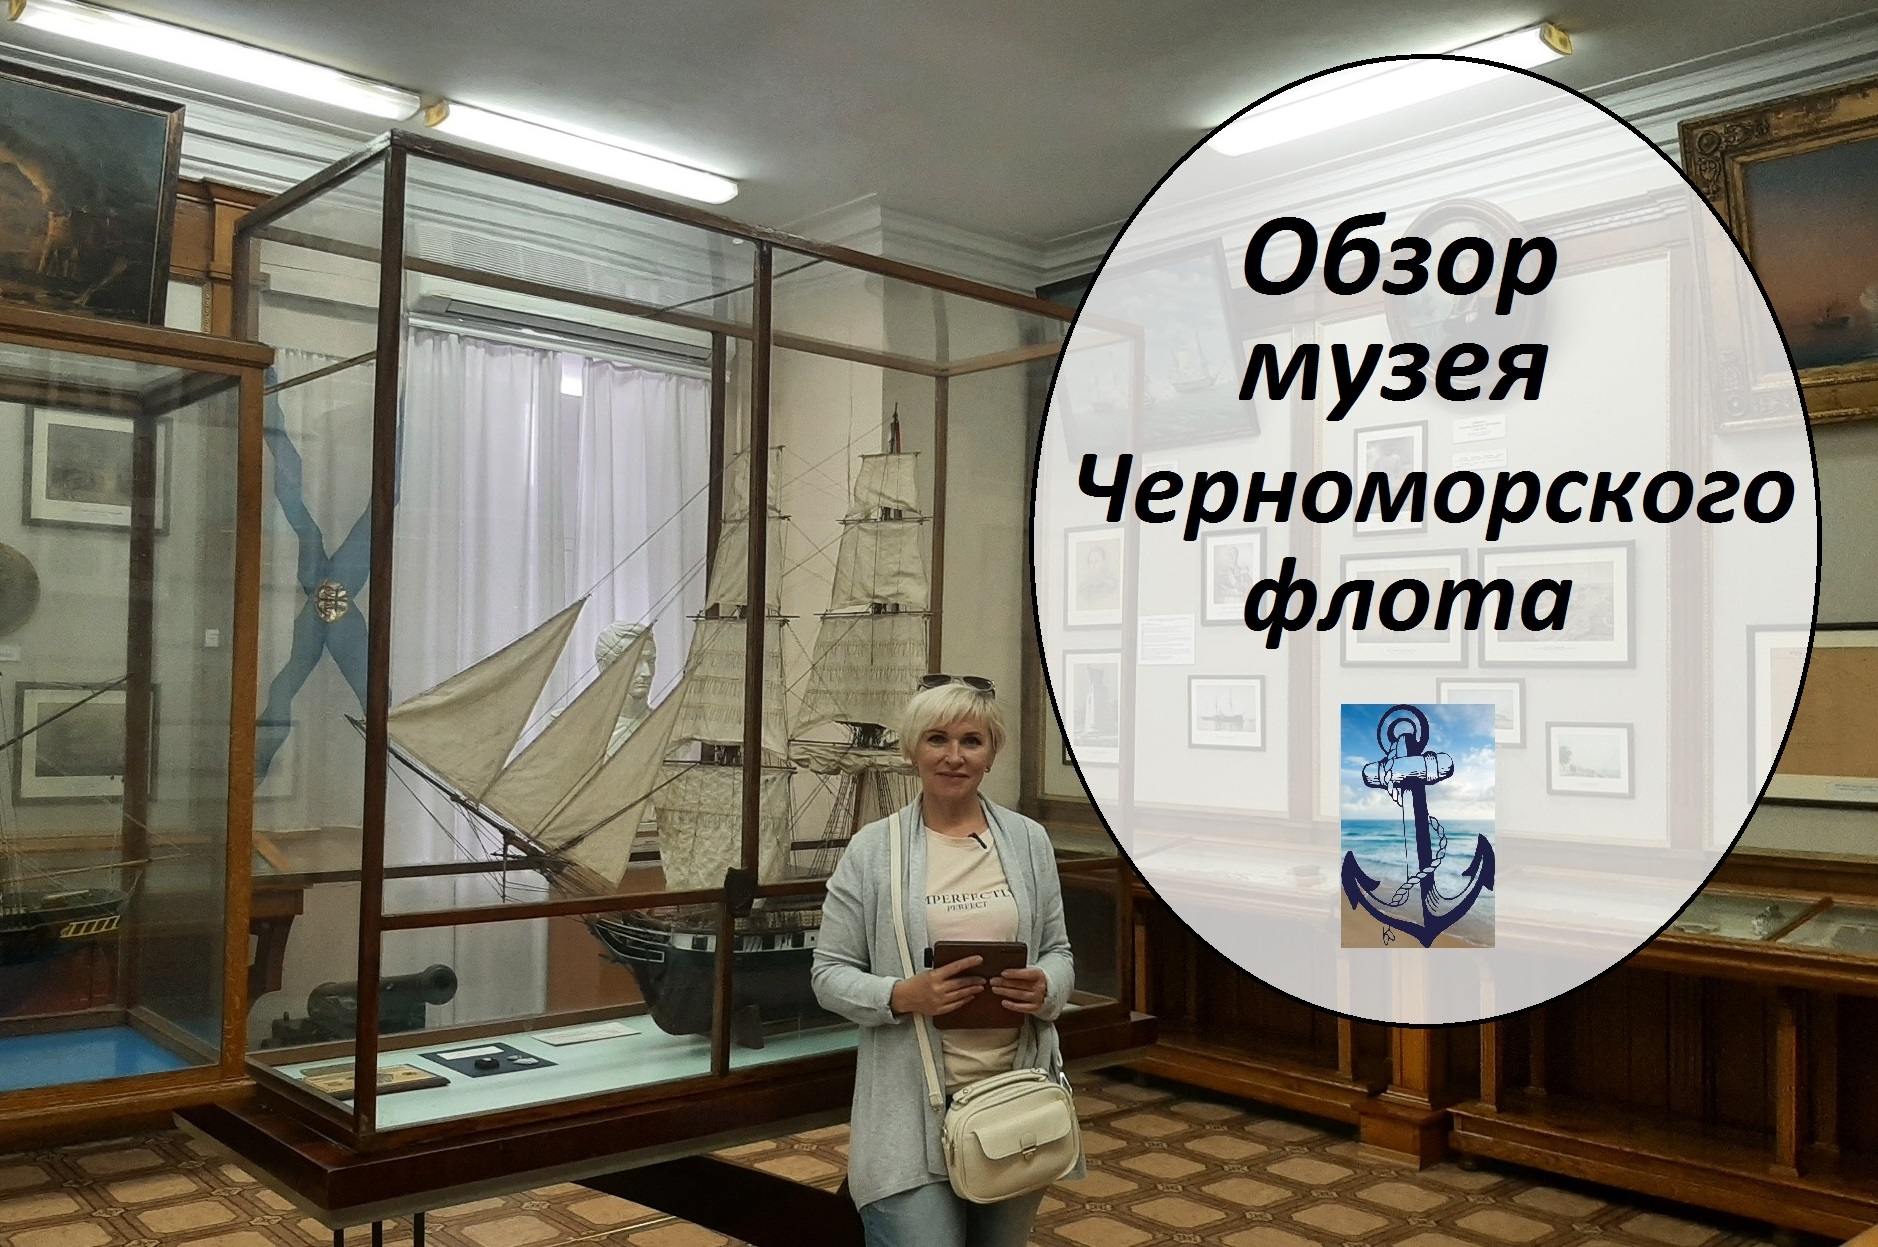 Обзор музея Черноморского флота, основан в 1869 году. Обелиск "Город-герой Севастополь" 1965 год